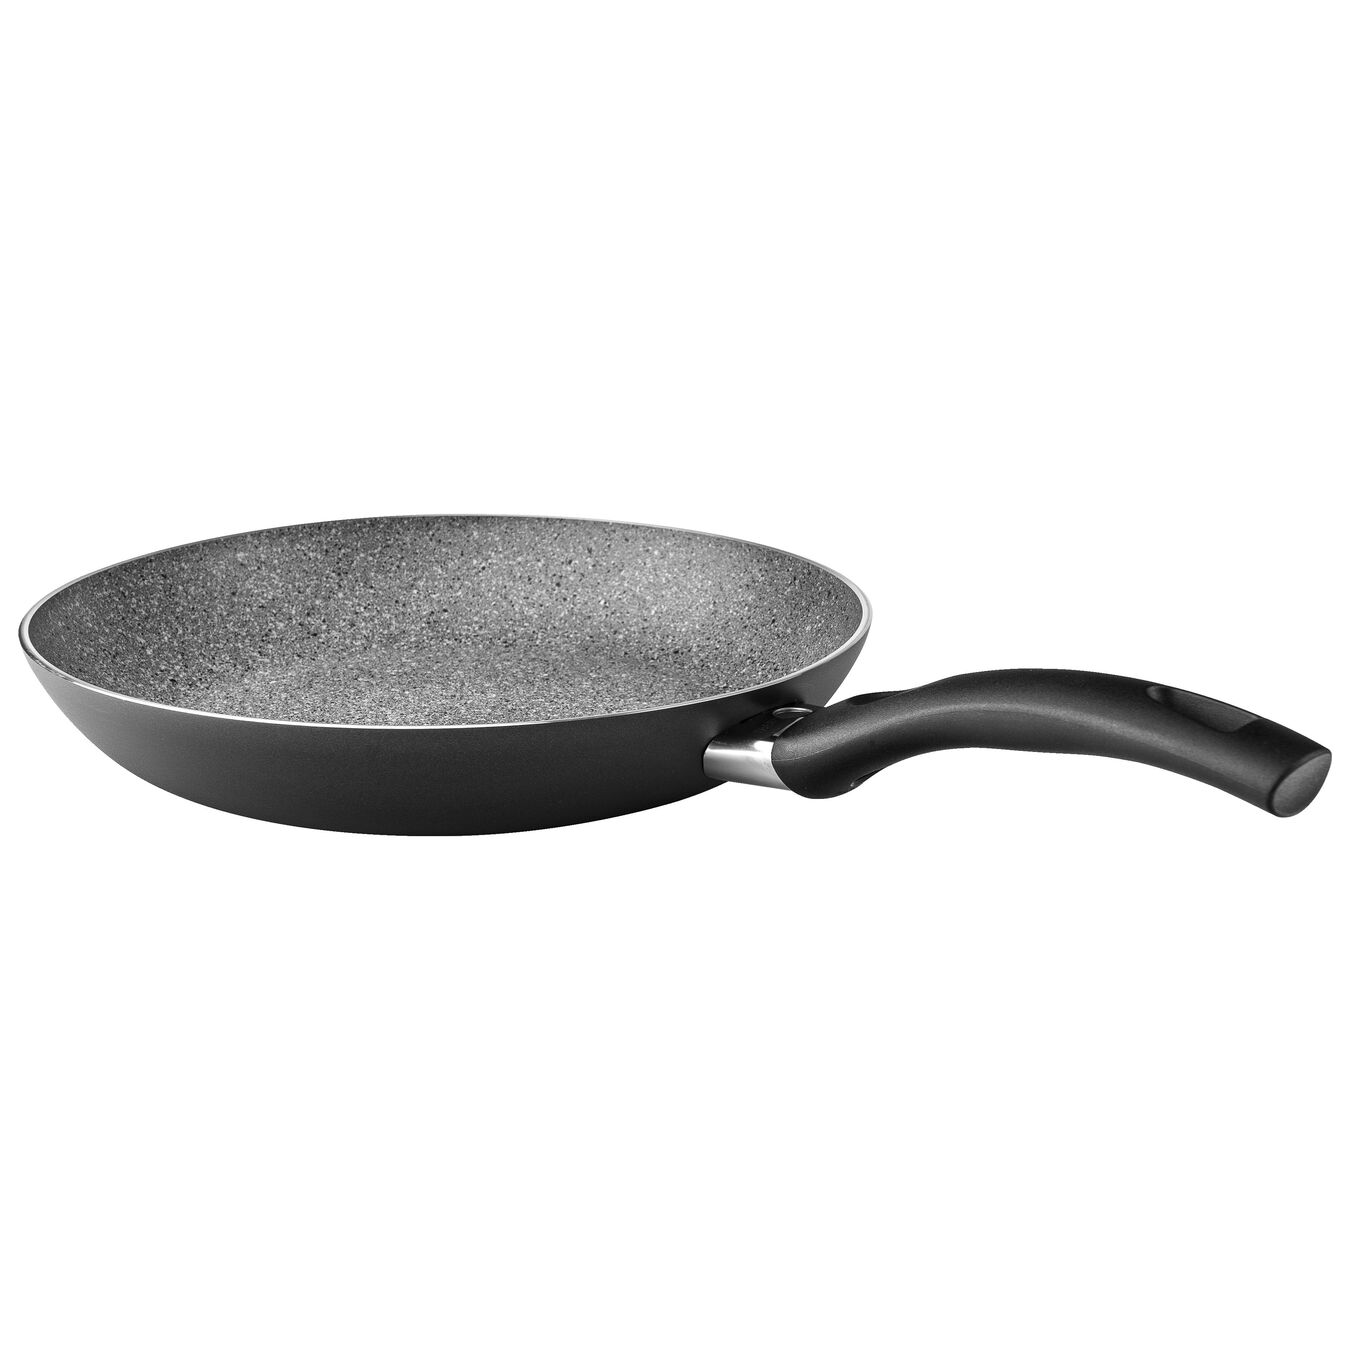 20 cm Aluminium Frying pan black,,large 2